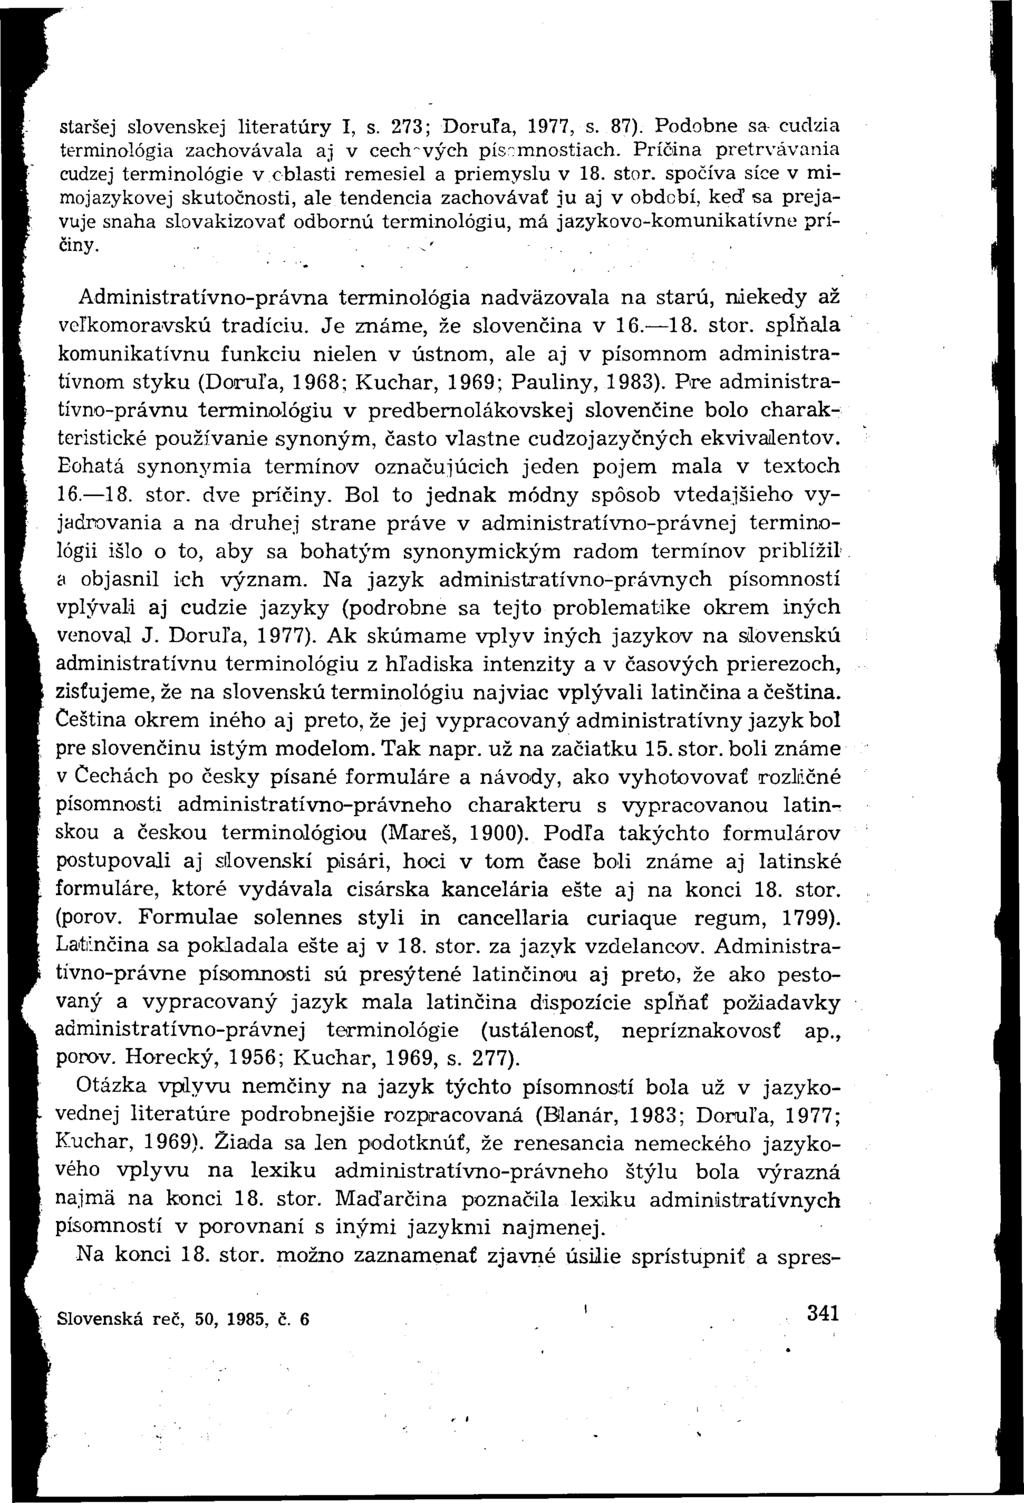 staršej slovenskej literatúry I, s. 273; Doruľa, 1977, s. 87). Podobne sa cudzia terminológia zachovávala aj v cechových písomnostiach.